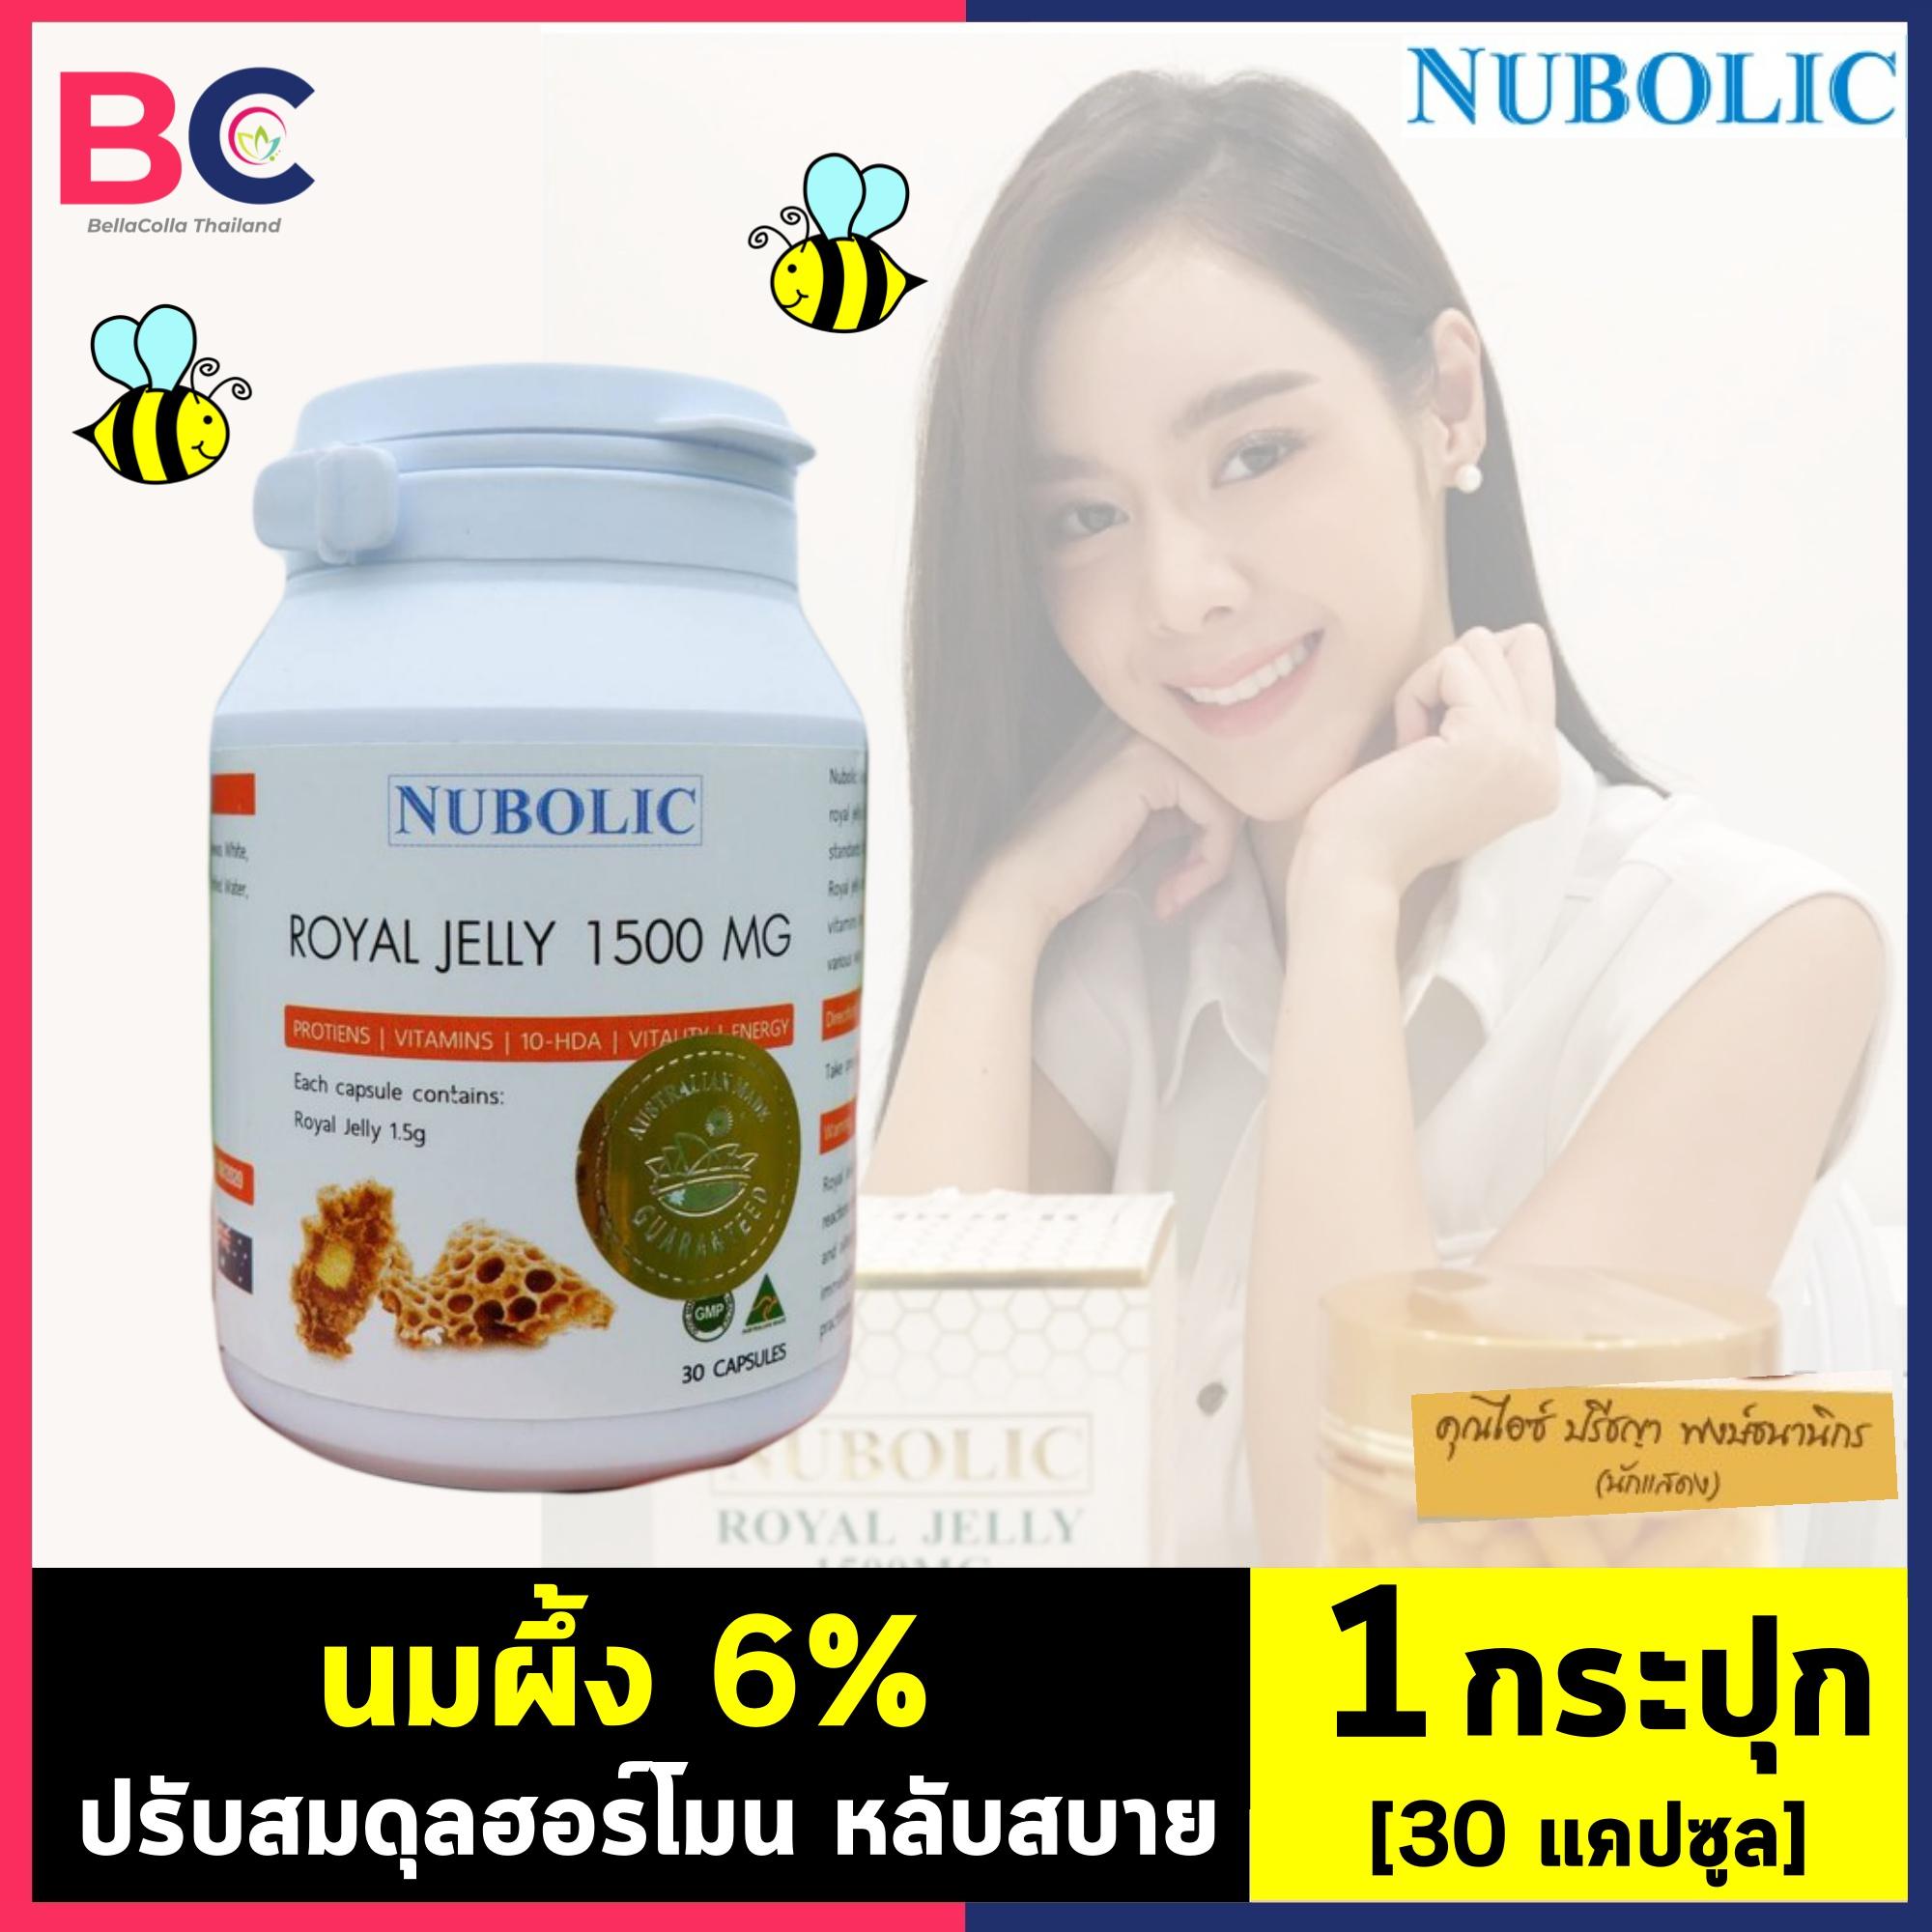 นูโบลิก รอยัล เจลลี่ [1 กระปุก] [30 แคปซูล] นมผึ้ง Royal Jelly 1500 mg. 6% Nubolic Royal Jelly ฟื้นฟูเซลล์คงความอ่อนเยาว์ by BellaColla Thailand